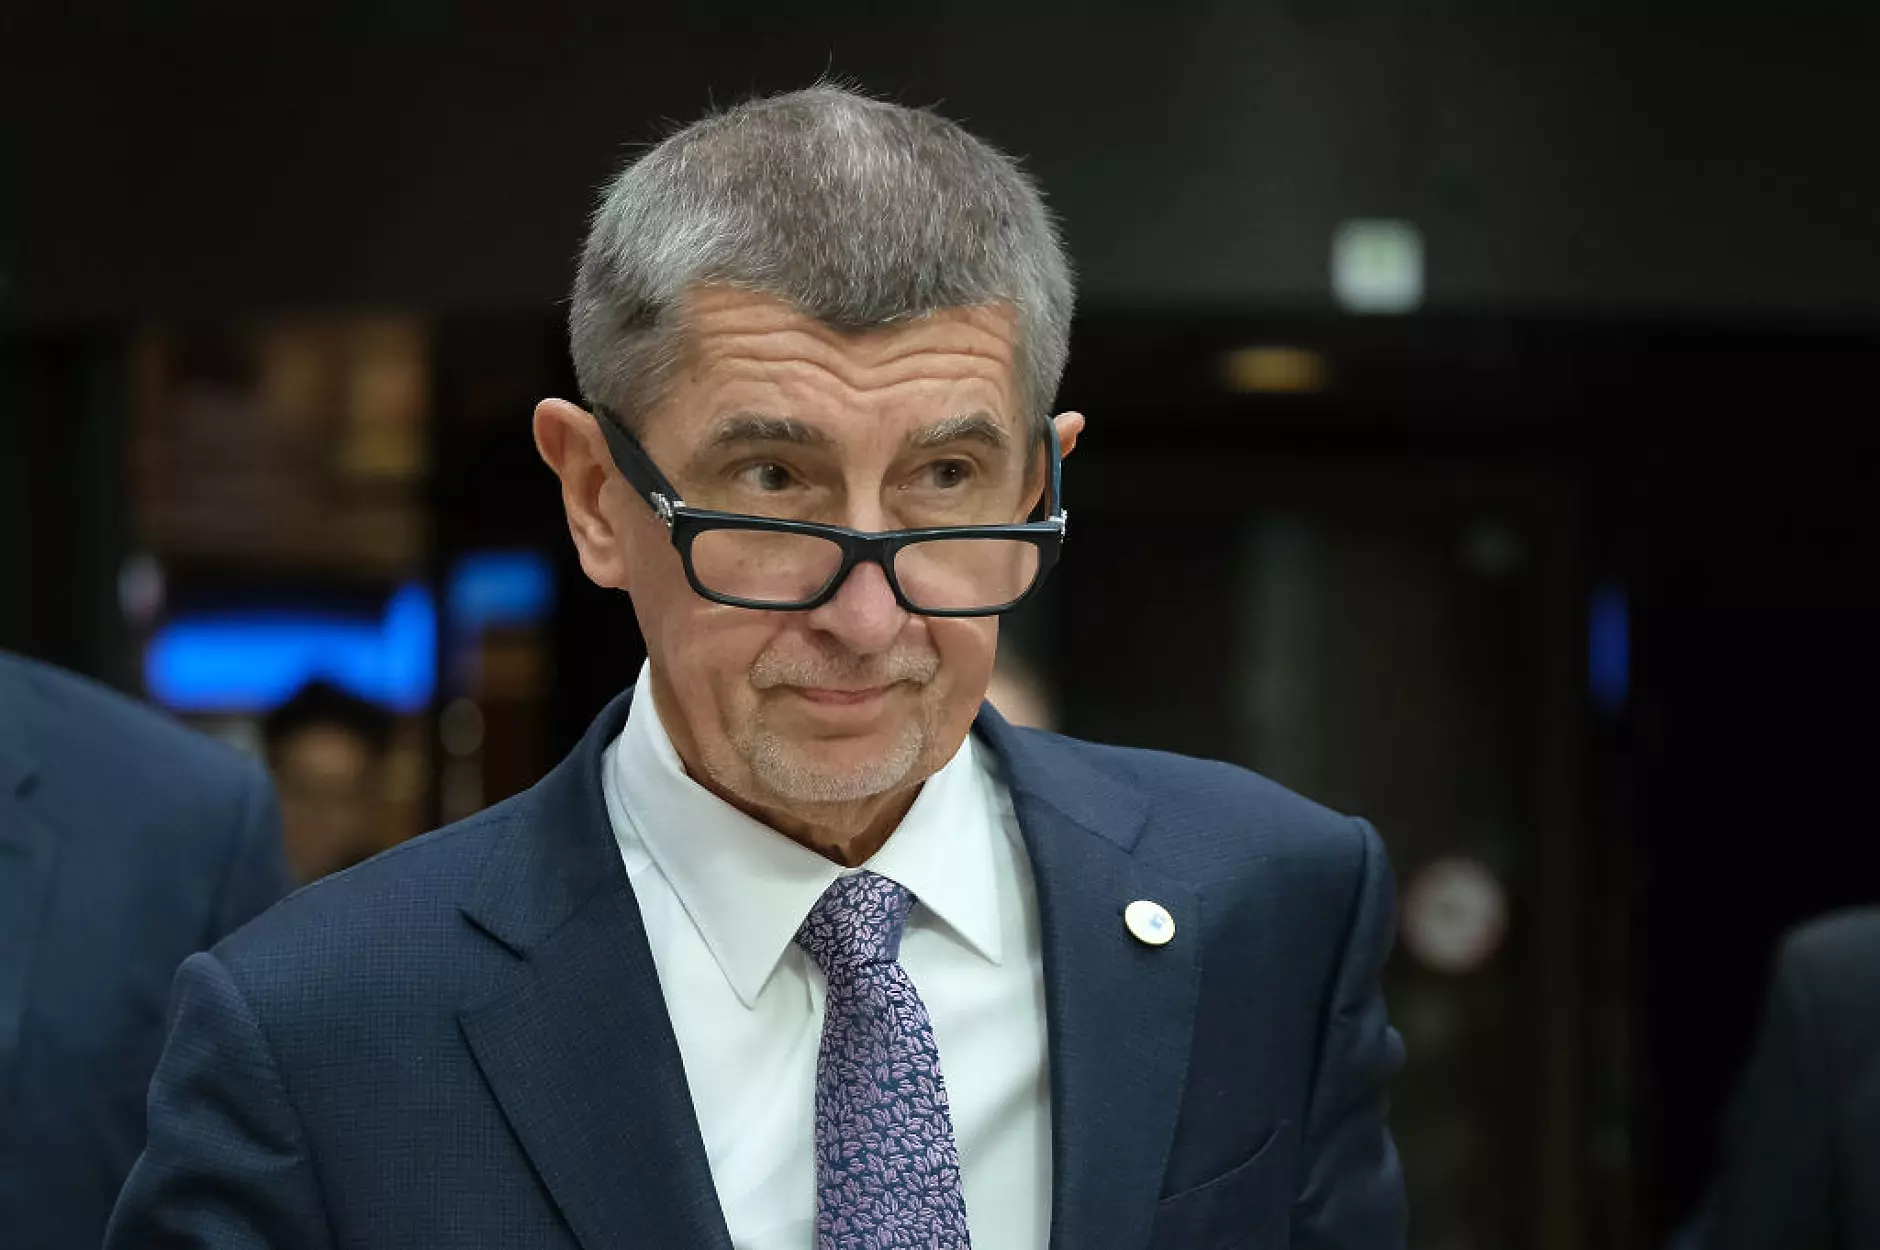 Бившият чешки премиер Андрей Бабиш бе оправдан по обвинение за измама с евросредства